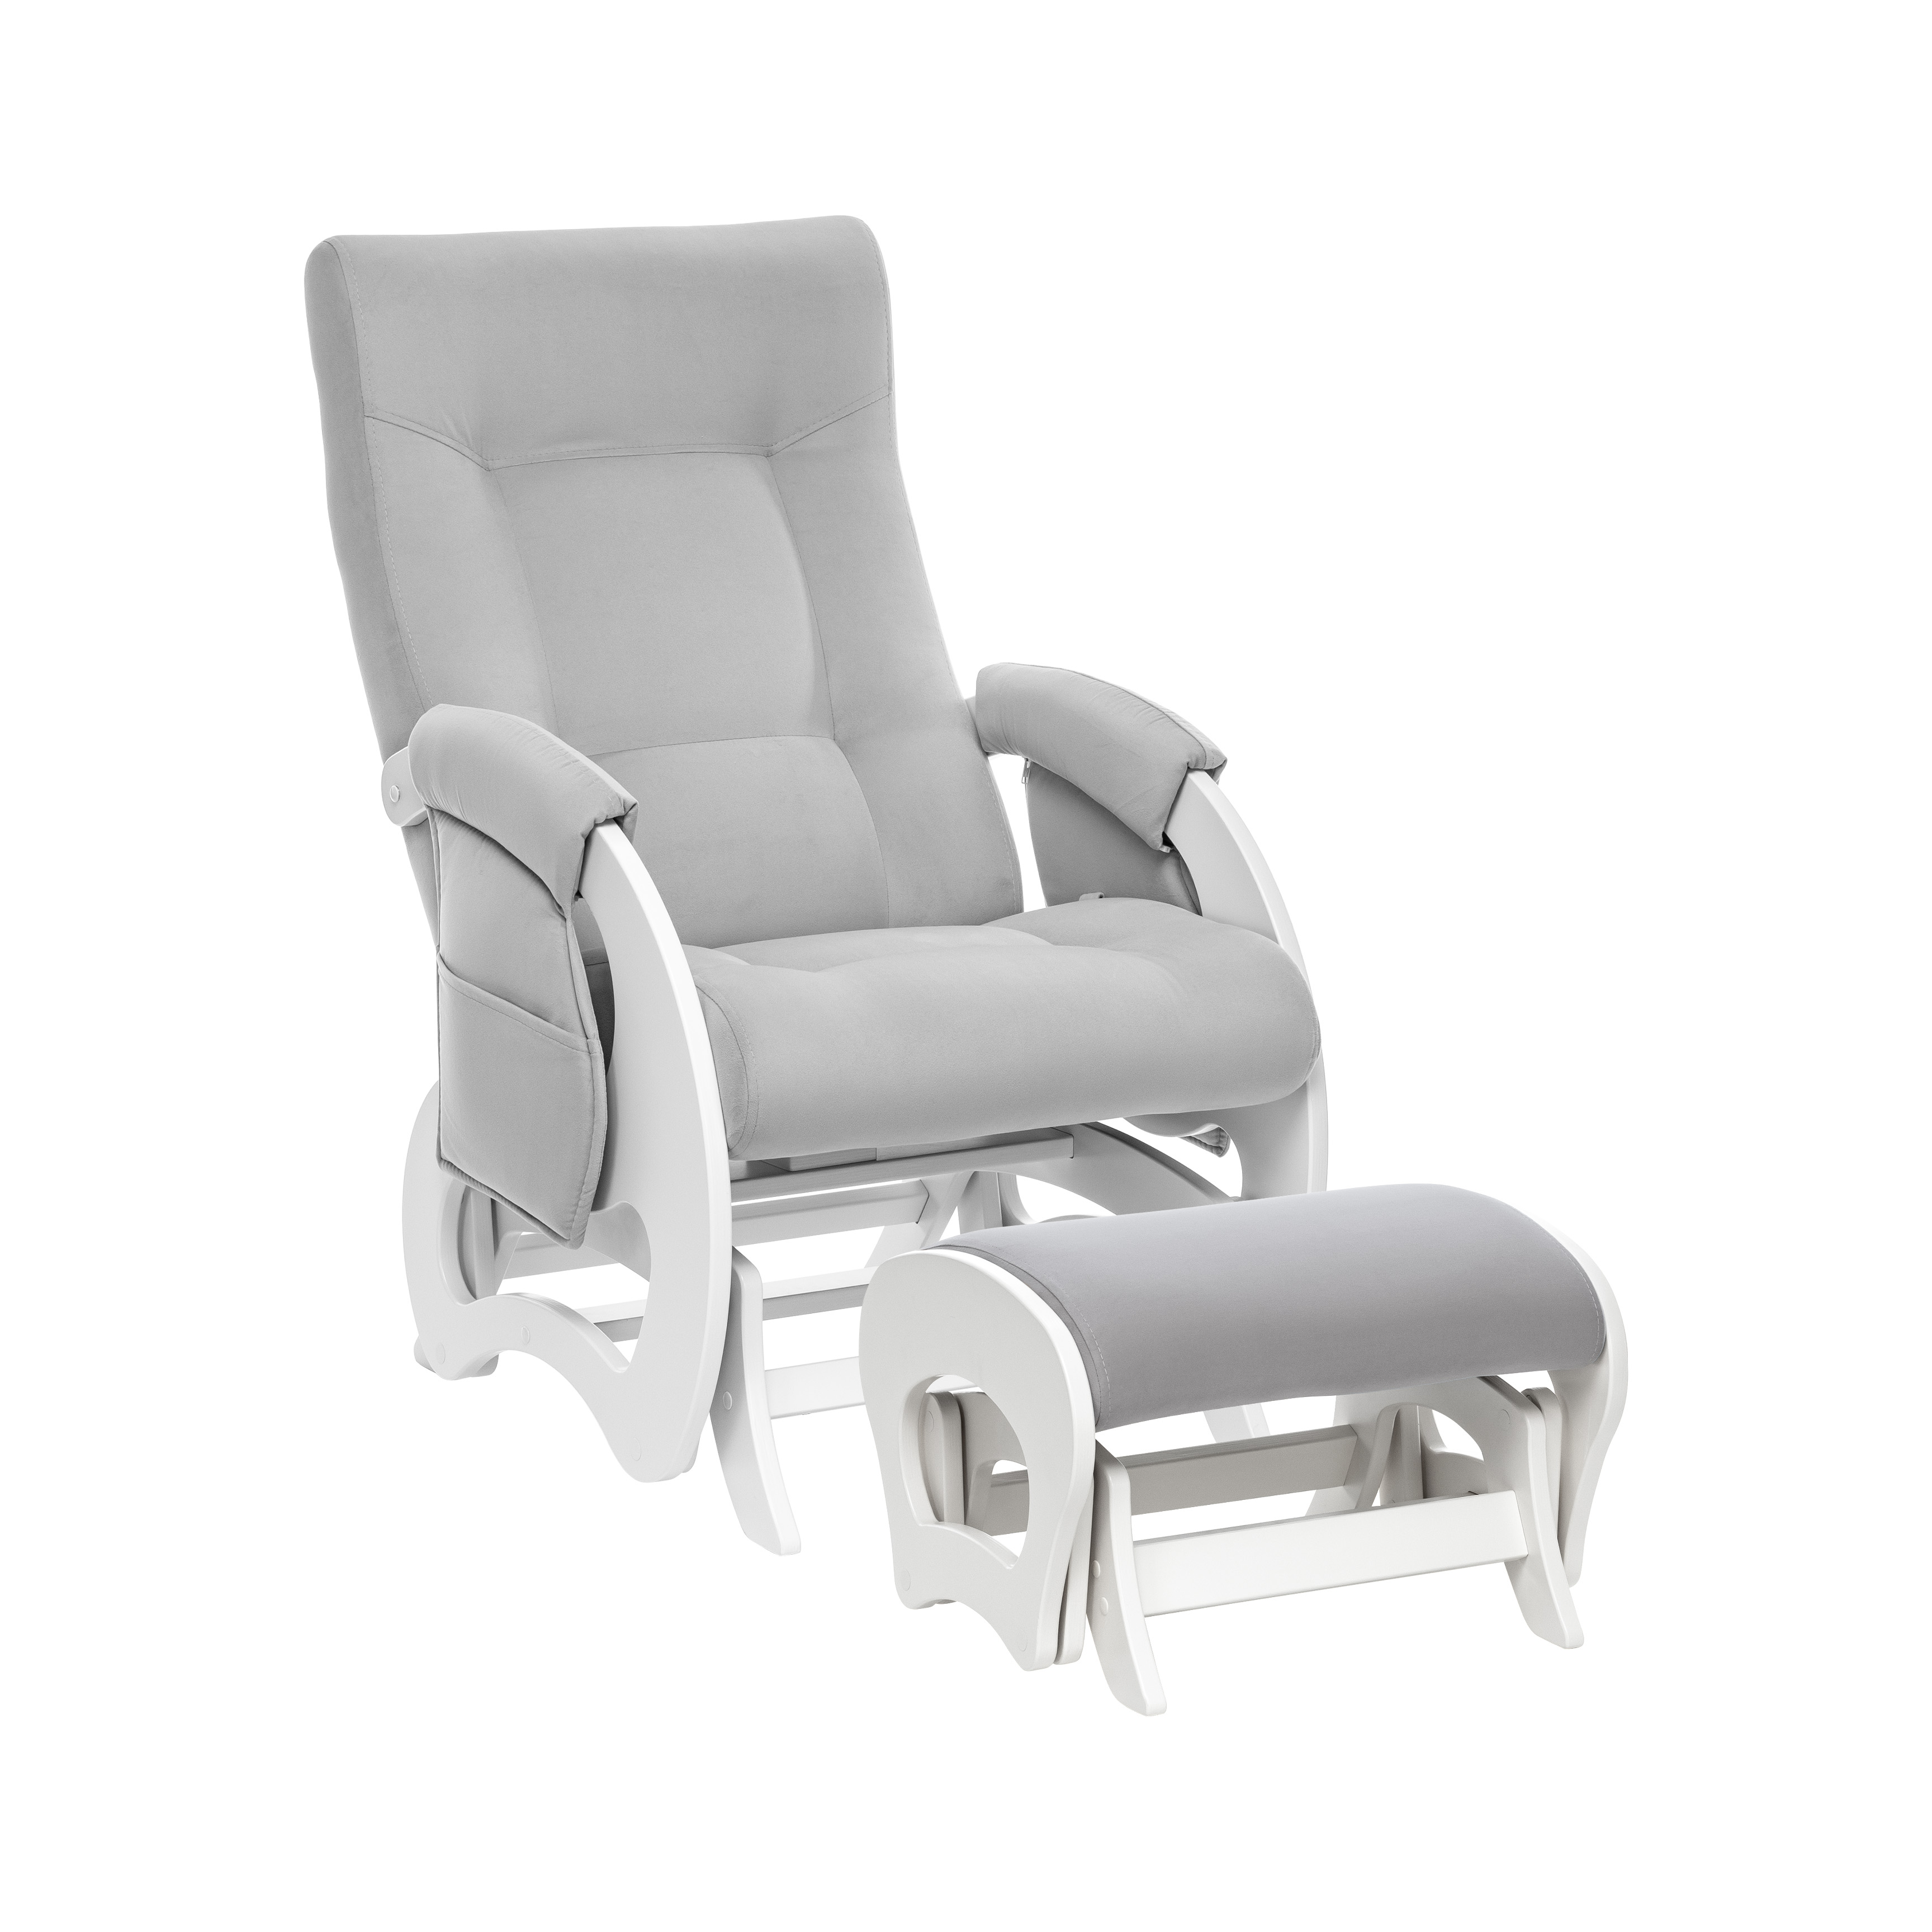 Кресло-глайдер и пуф для мамы для кормления Milli Ария Дуб молочныйV51 Light Grey кресло для мамы milli пуф uni молочный дуб